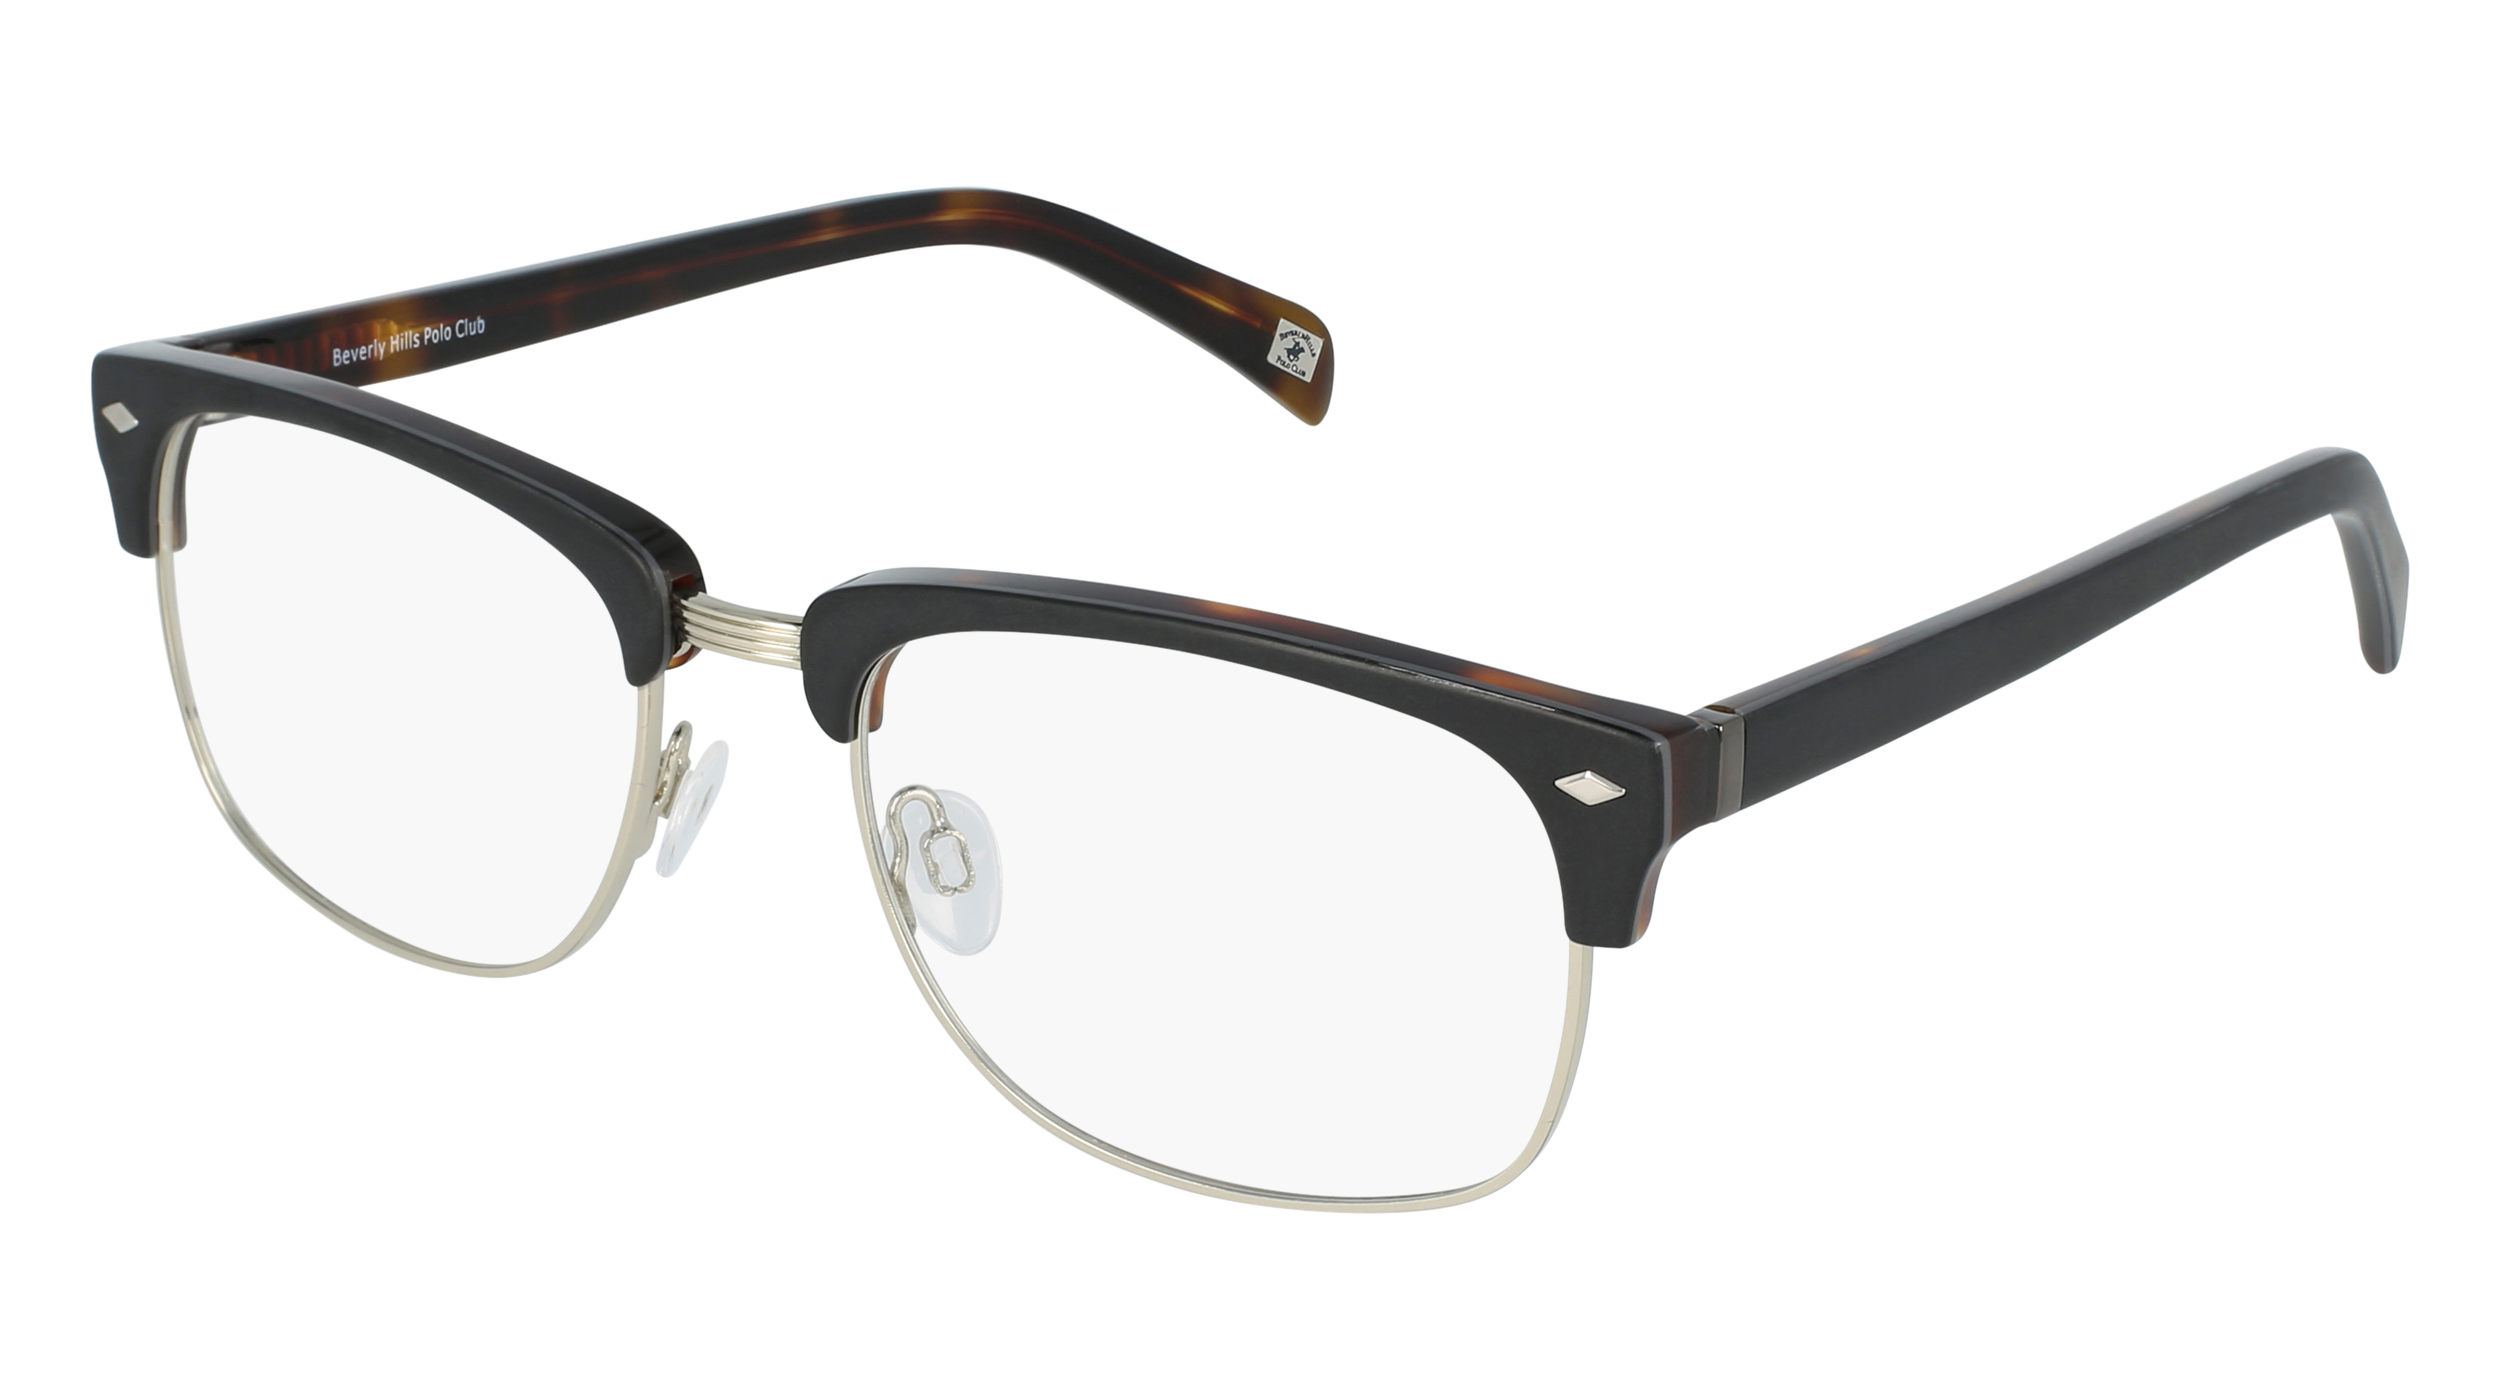 Men's Glasses & Sunglasses - Designer Brands - Meijer Optical